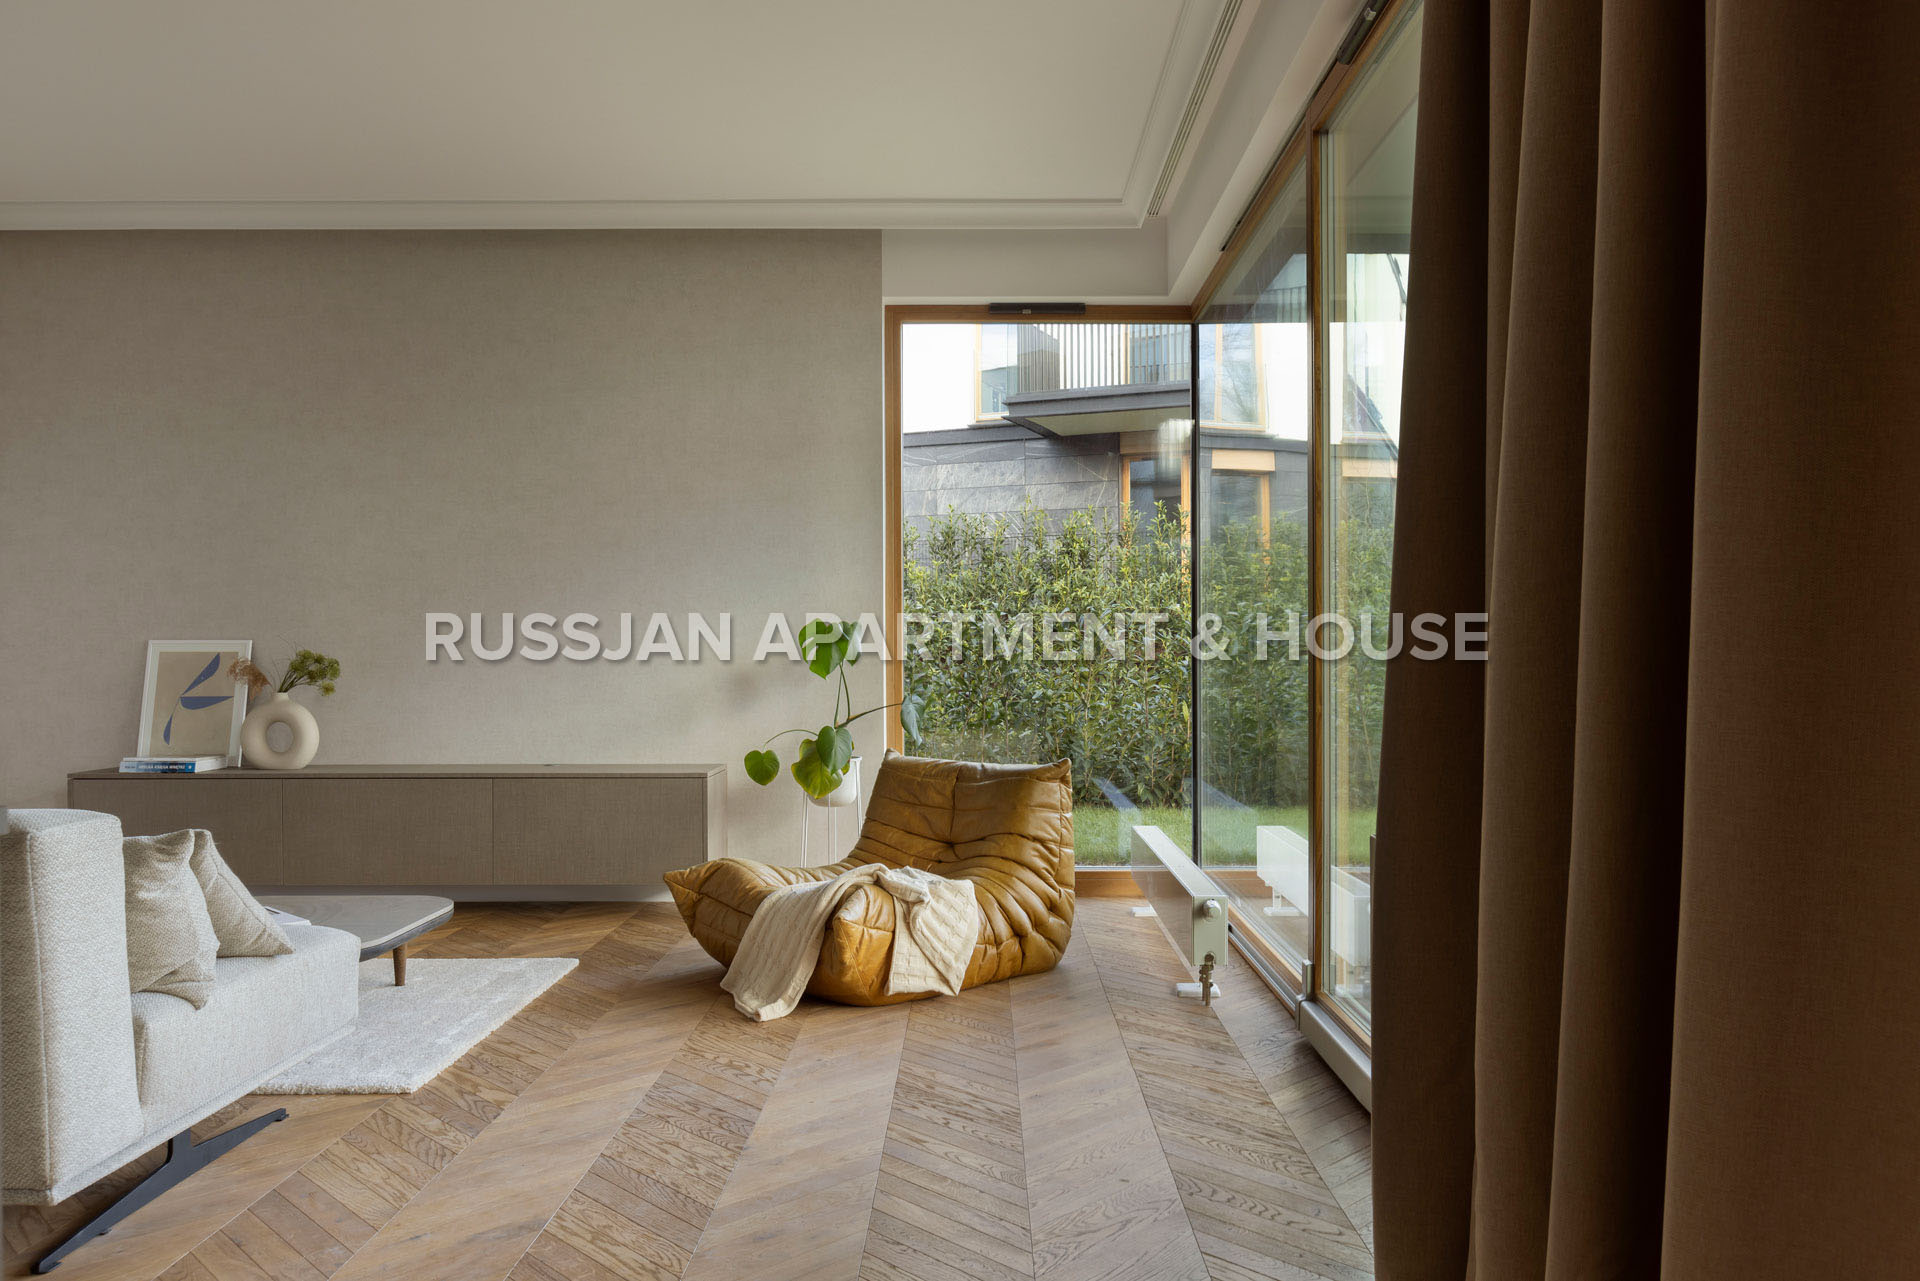 Apartament Gdynia Orłowo - Nowe Kolibki  - Elegancki apartament na prestiżowym osiedlu, położony w otulinie lasu  - Russjan